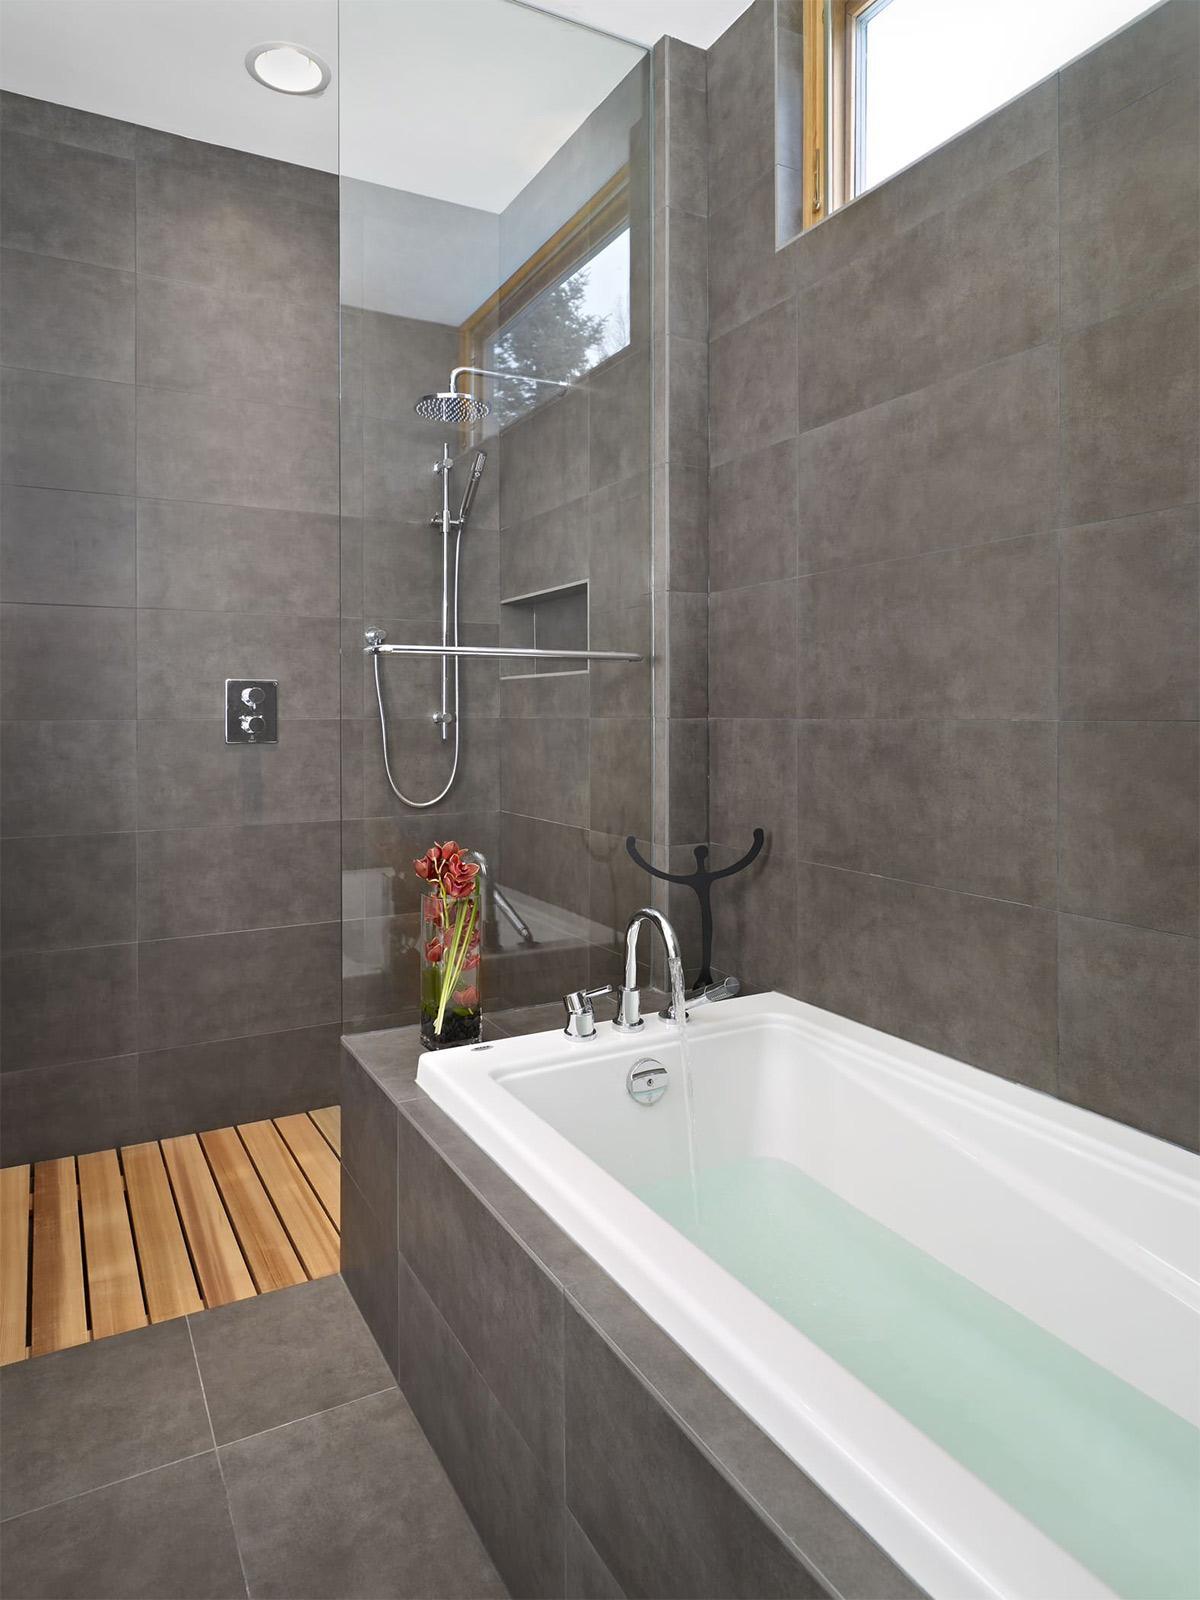 Thiết kế nội thất phòng tắm sử dụng tông màu trắng xám thanh bình